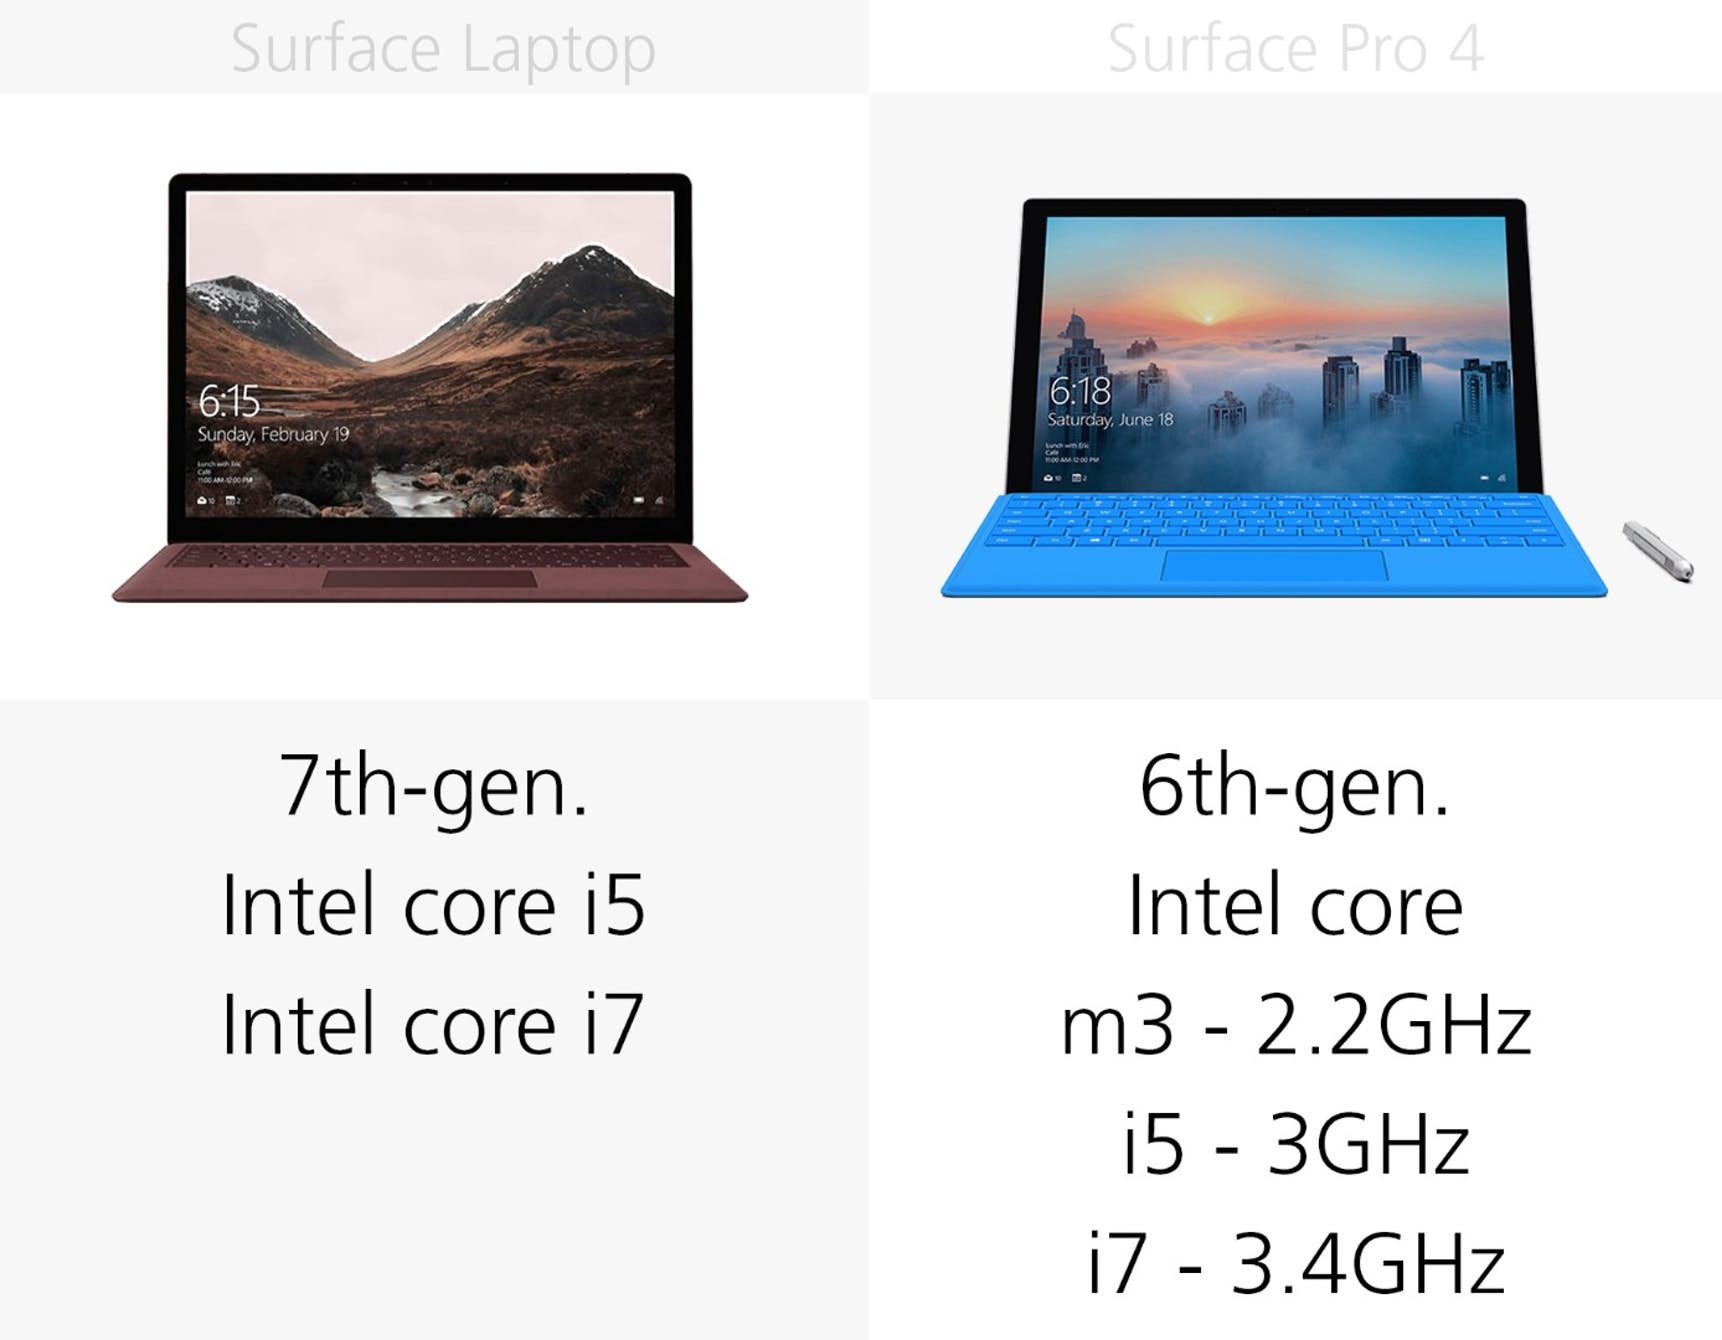 1493969776_microsoft-surface-laptop-vs-surface-pro-4-specs-comparison-31.jpg